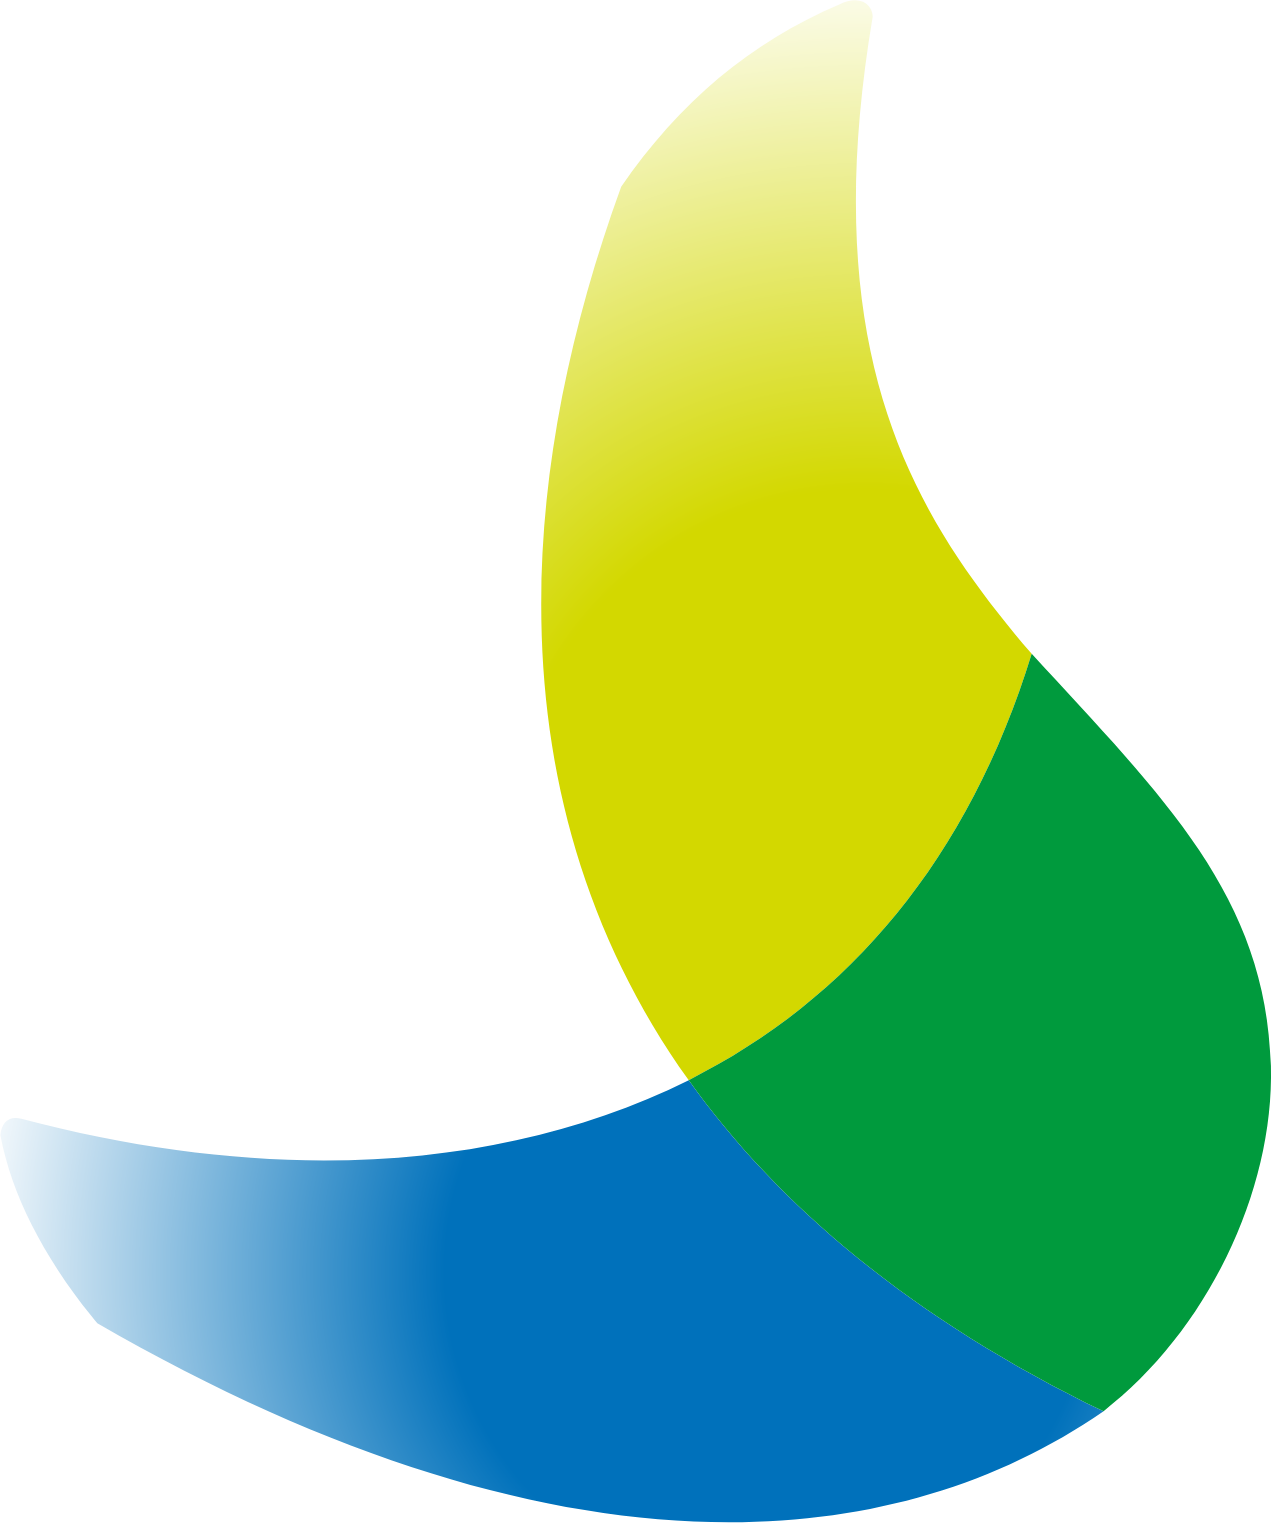 Centrais Electricas Brasileiras logo (PNG transparent)